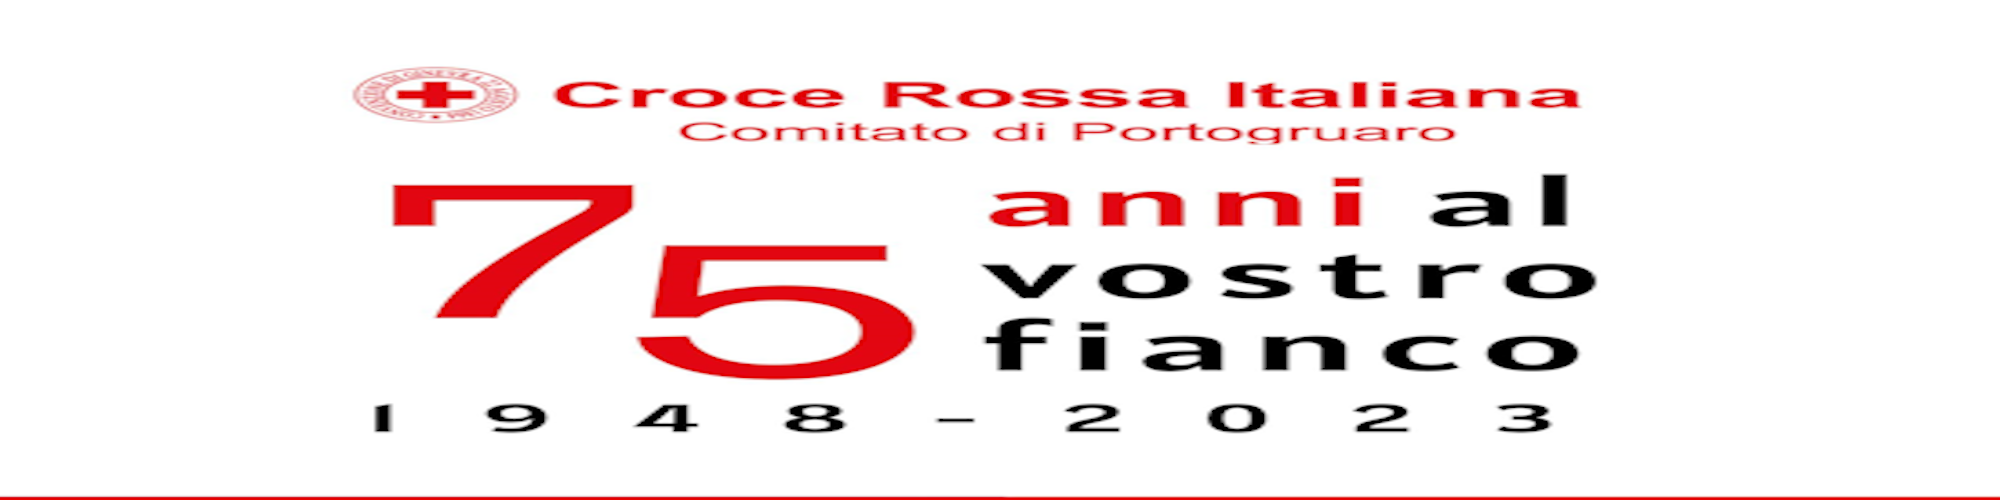 Immagine Croce Rossa Italiana: 75° Anniversario Comitato Portogruaro